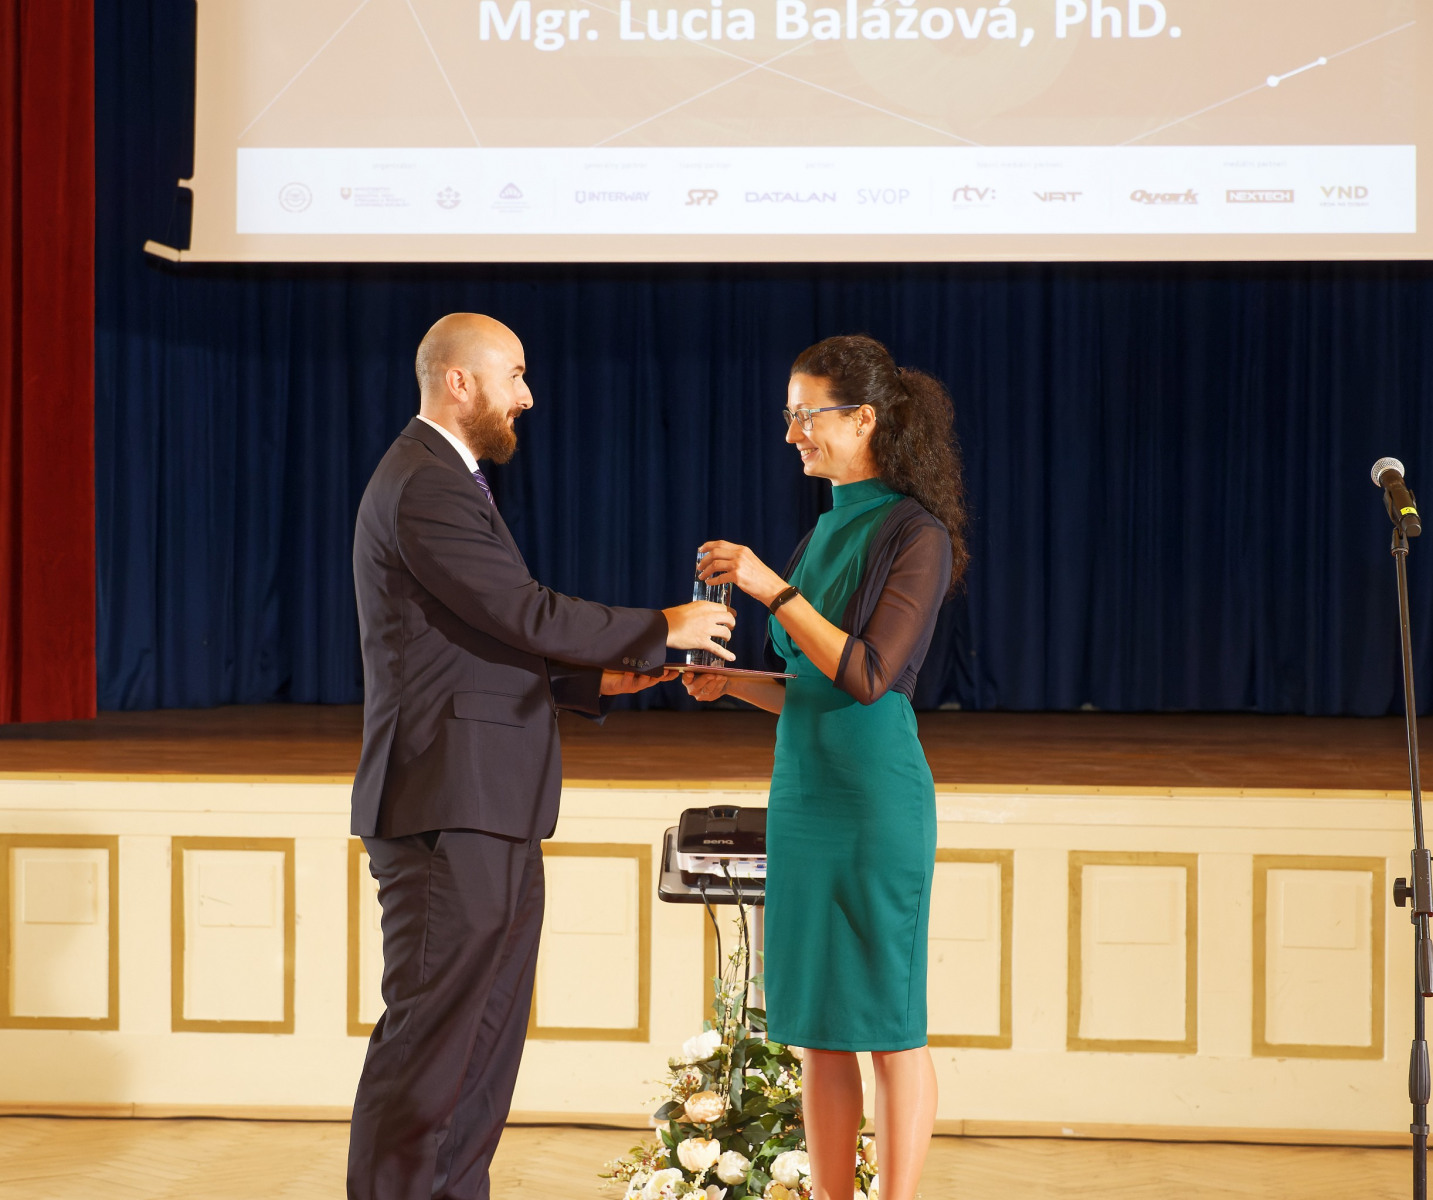 Mladá vedecká pracovníčka: Mgr. Lucia Balážová, PhD., z Biomedicínskeho centra SAV v Bratislave. Vedec roka SR 2021